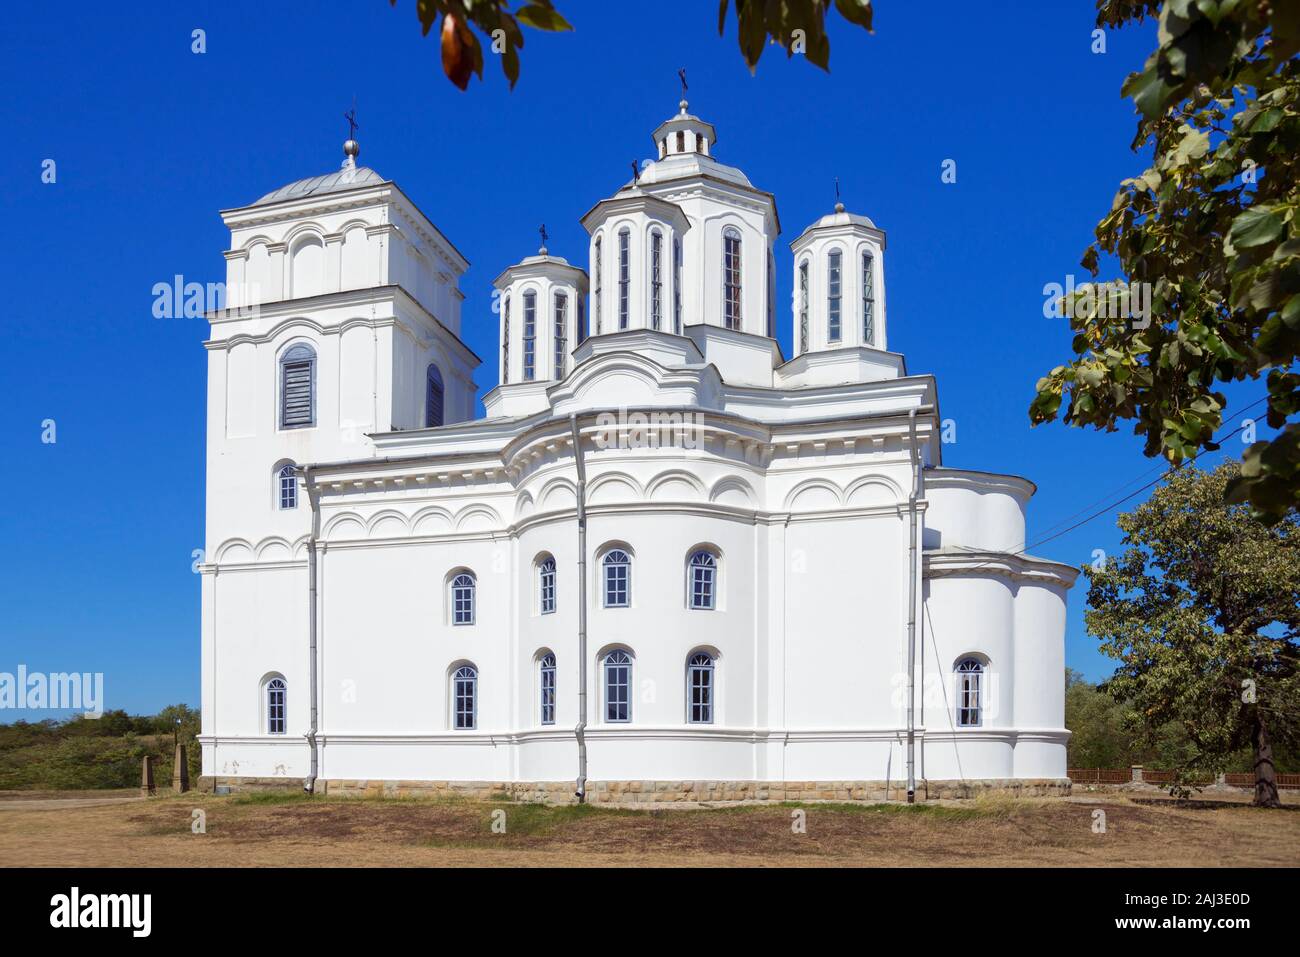 Serbisch-orthodoxe Kirche der Heiligen Erzengel Michael und Gabriel, Kondzelj, Serbien, Balkan / Sv. Arh. Mihajla ho Gavrila Foto Stock